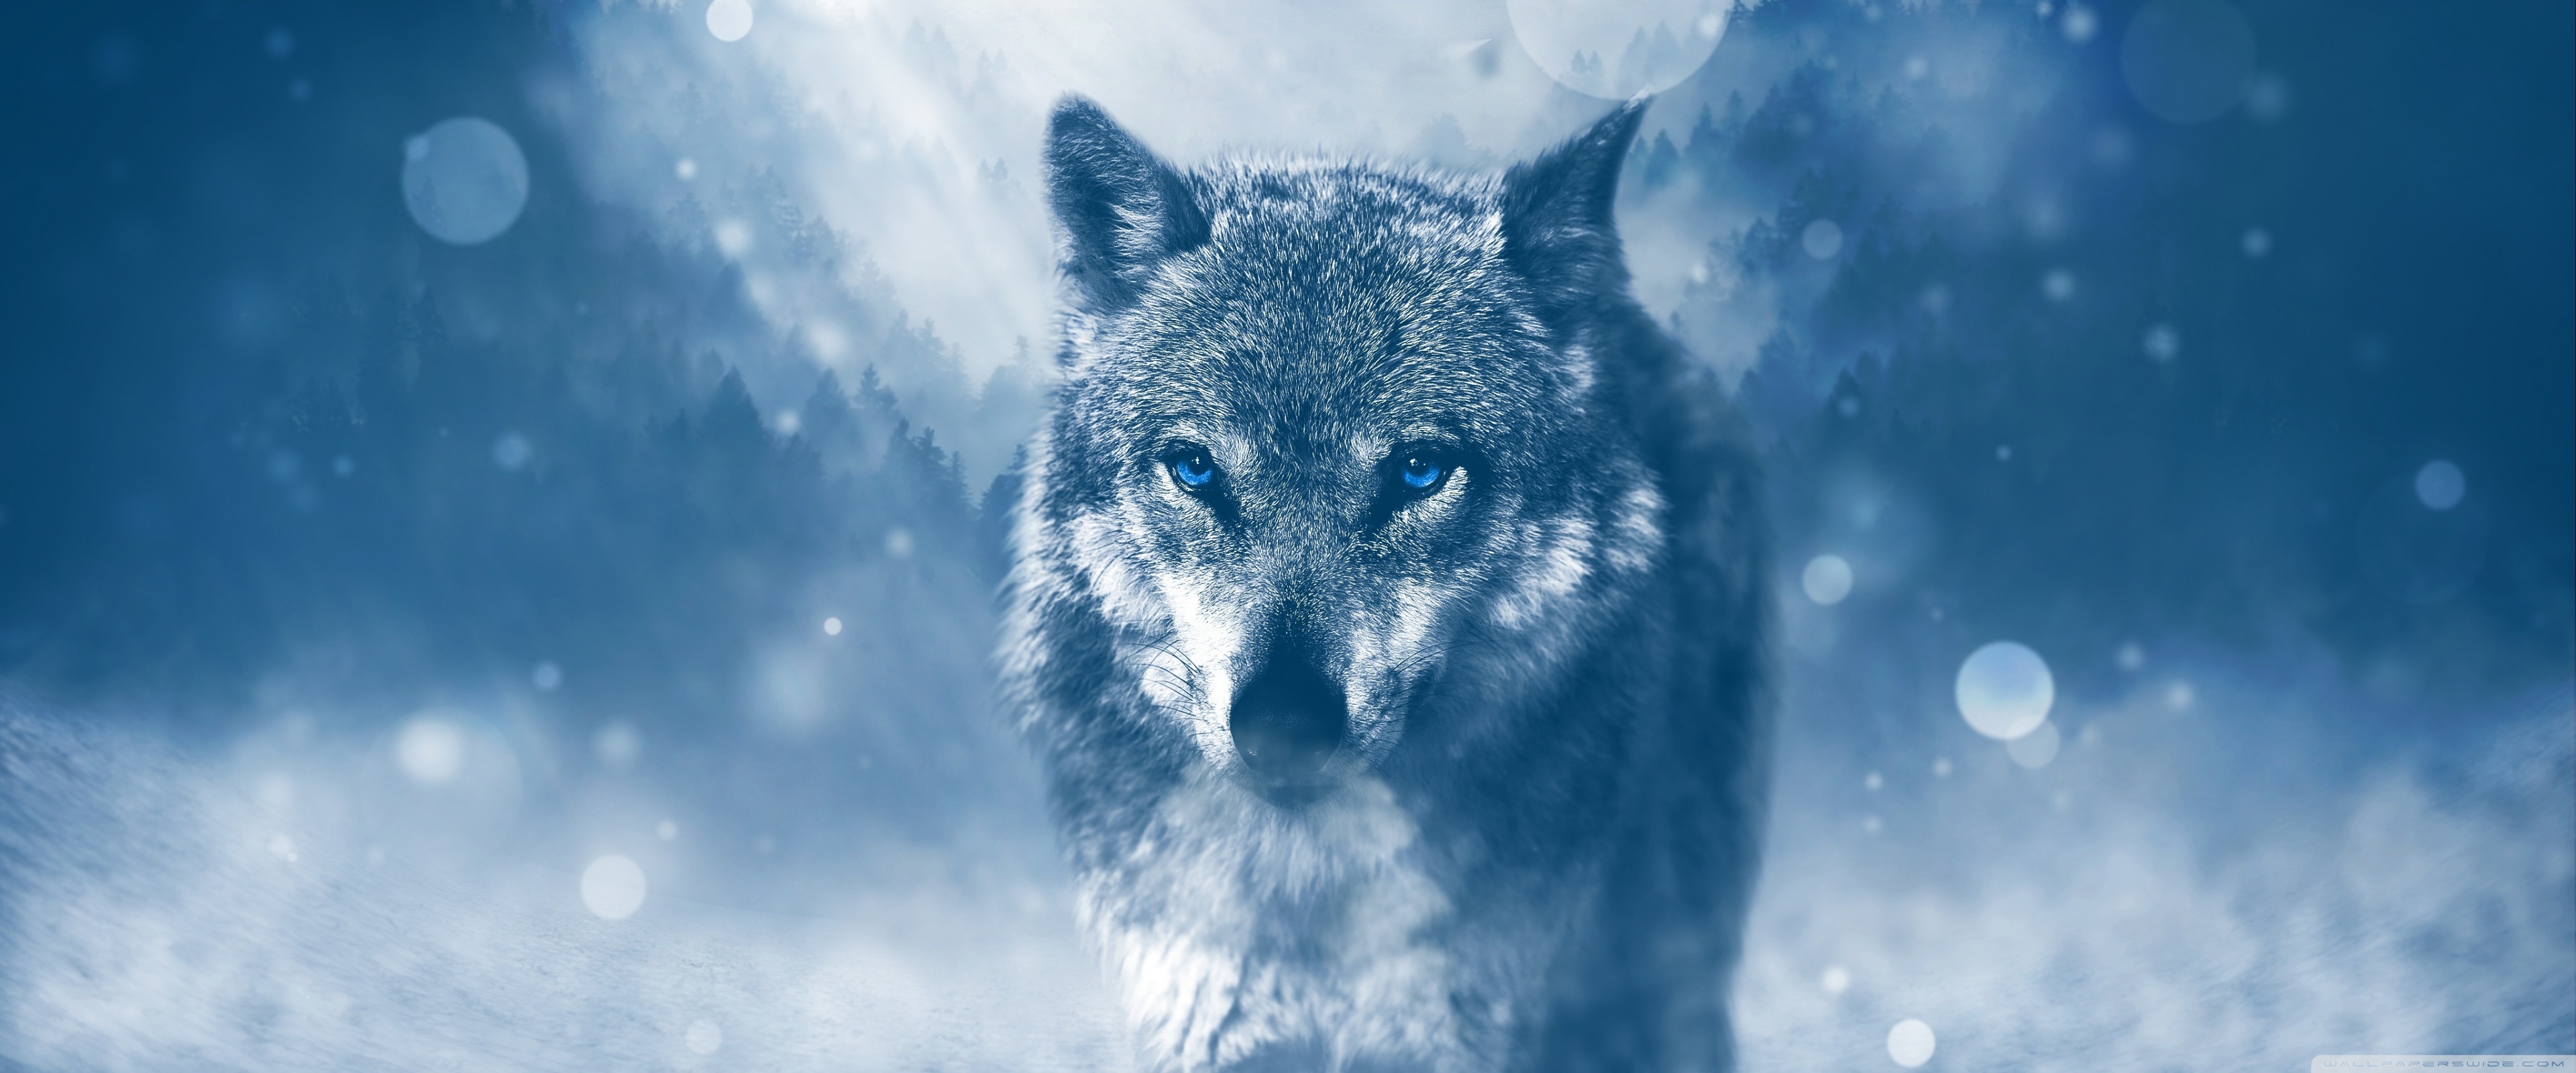 Wolf Background - 3840x1600 Wallpaper 